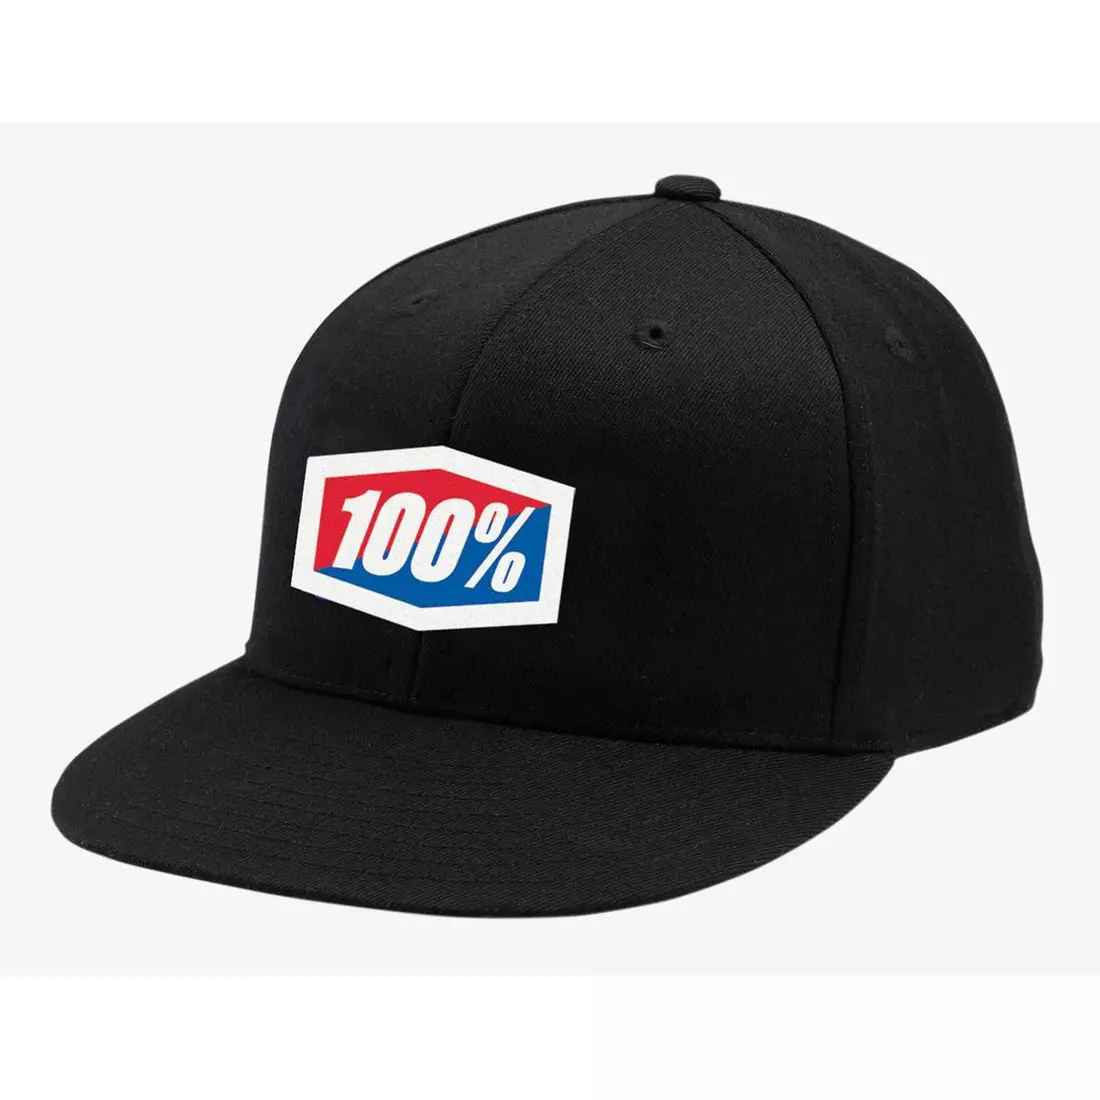 100% baseballová čepice official J-Fit flexfit hat black STO-20040-001-17